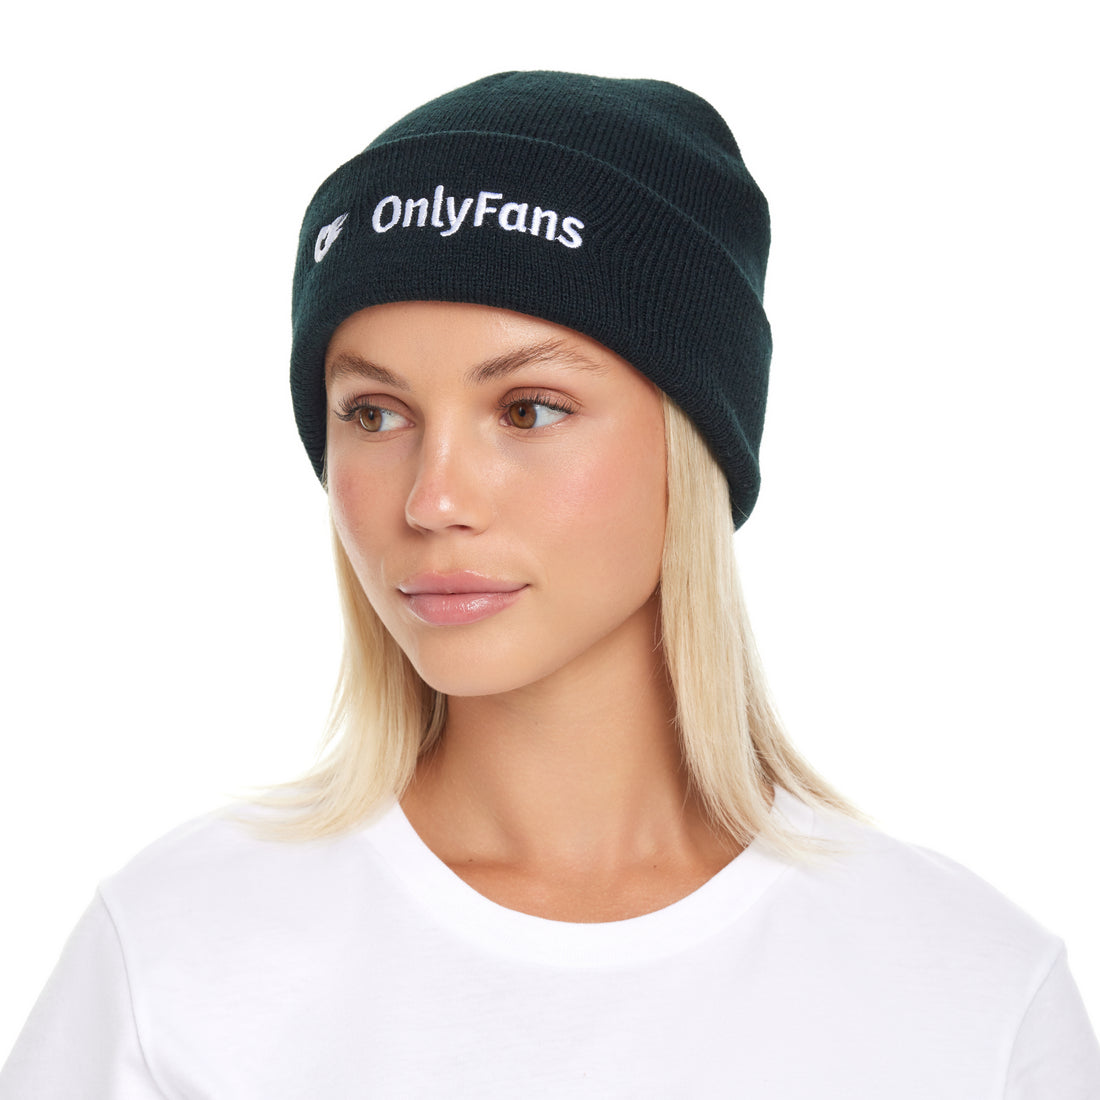 OnlyFans Full Logo Beanie